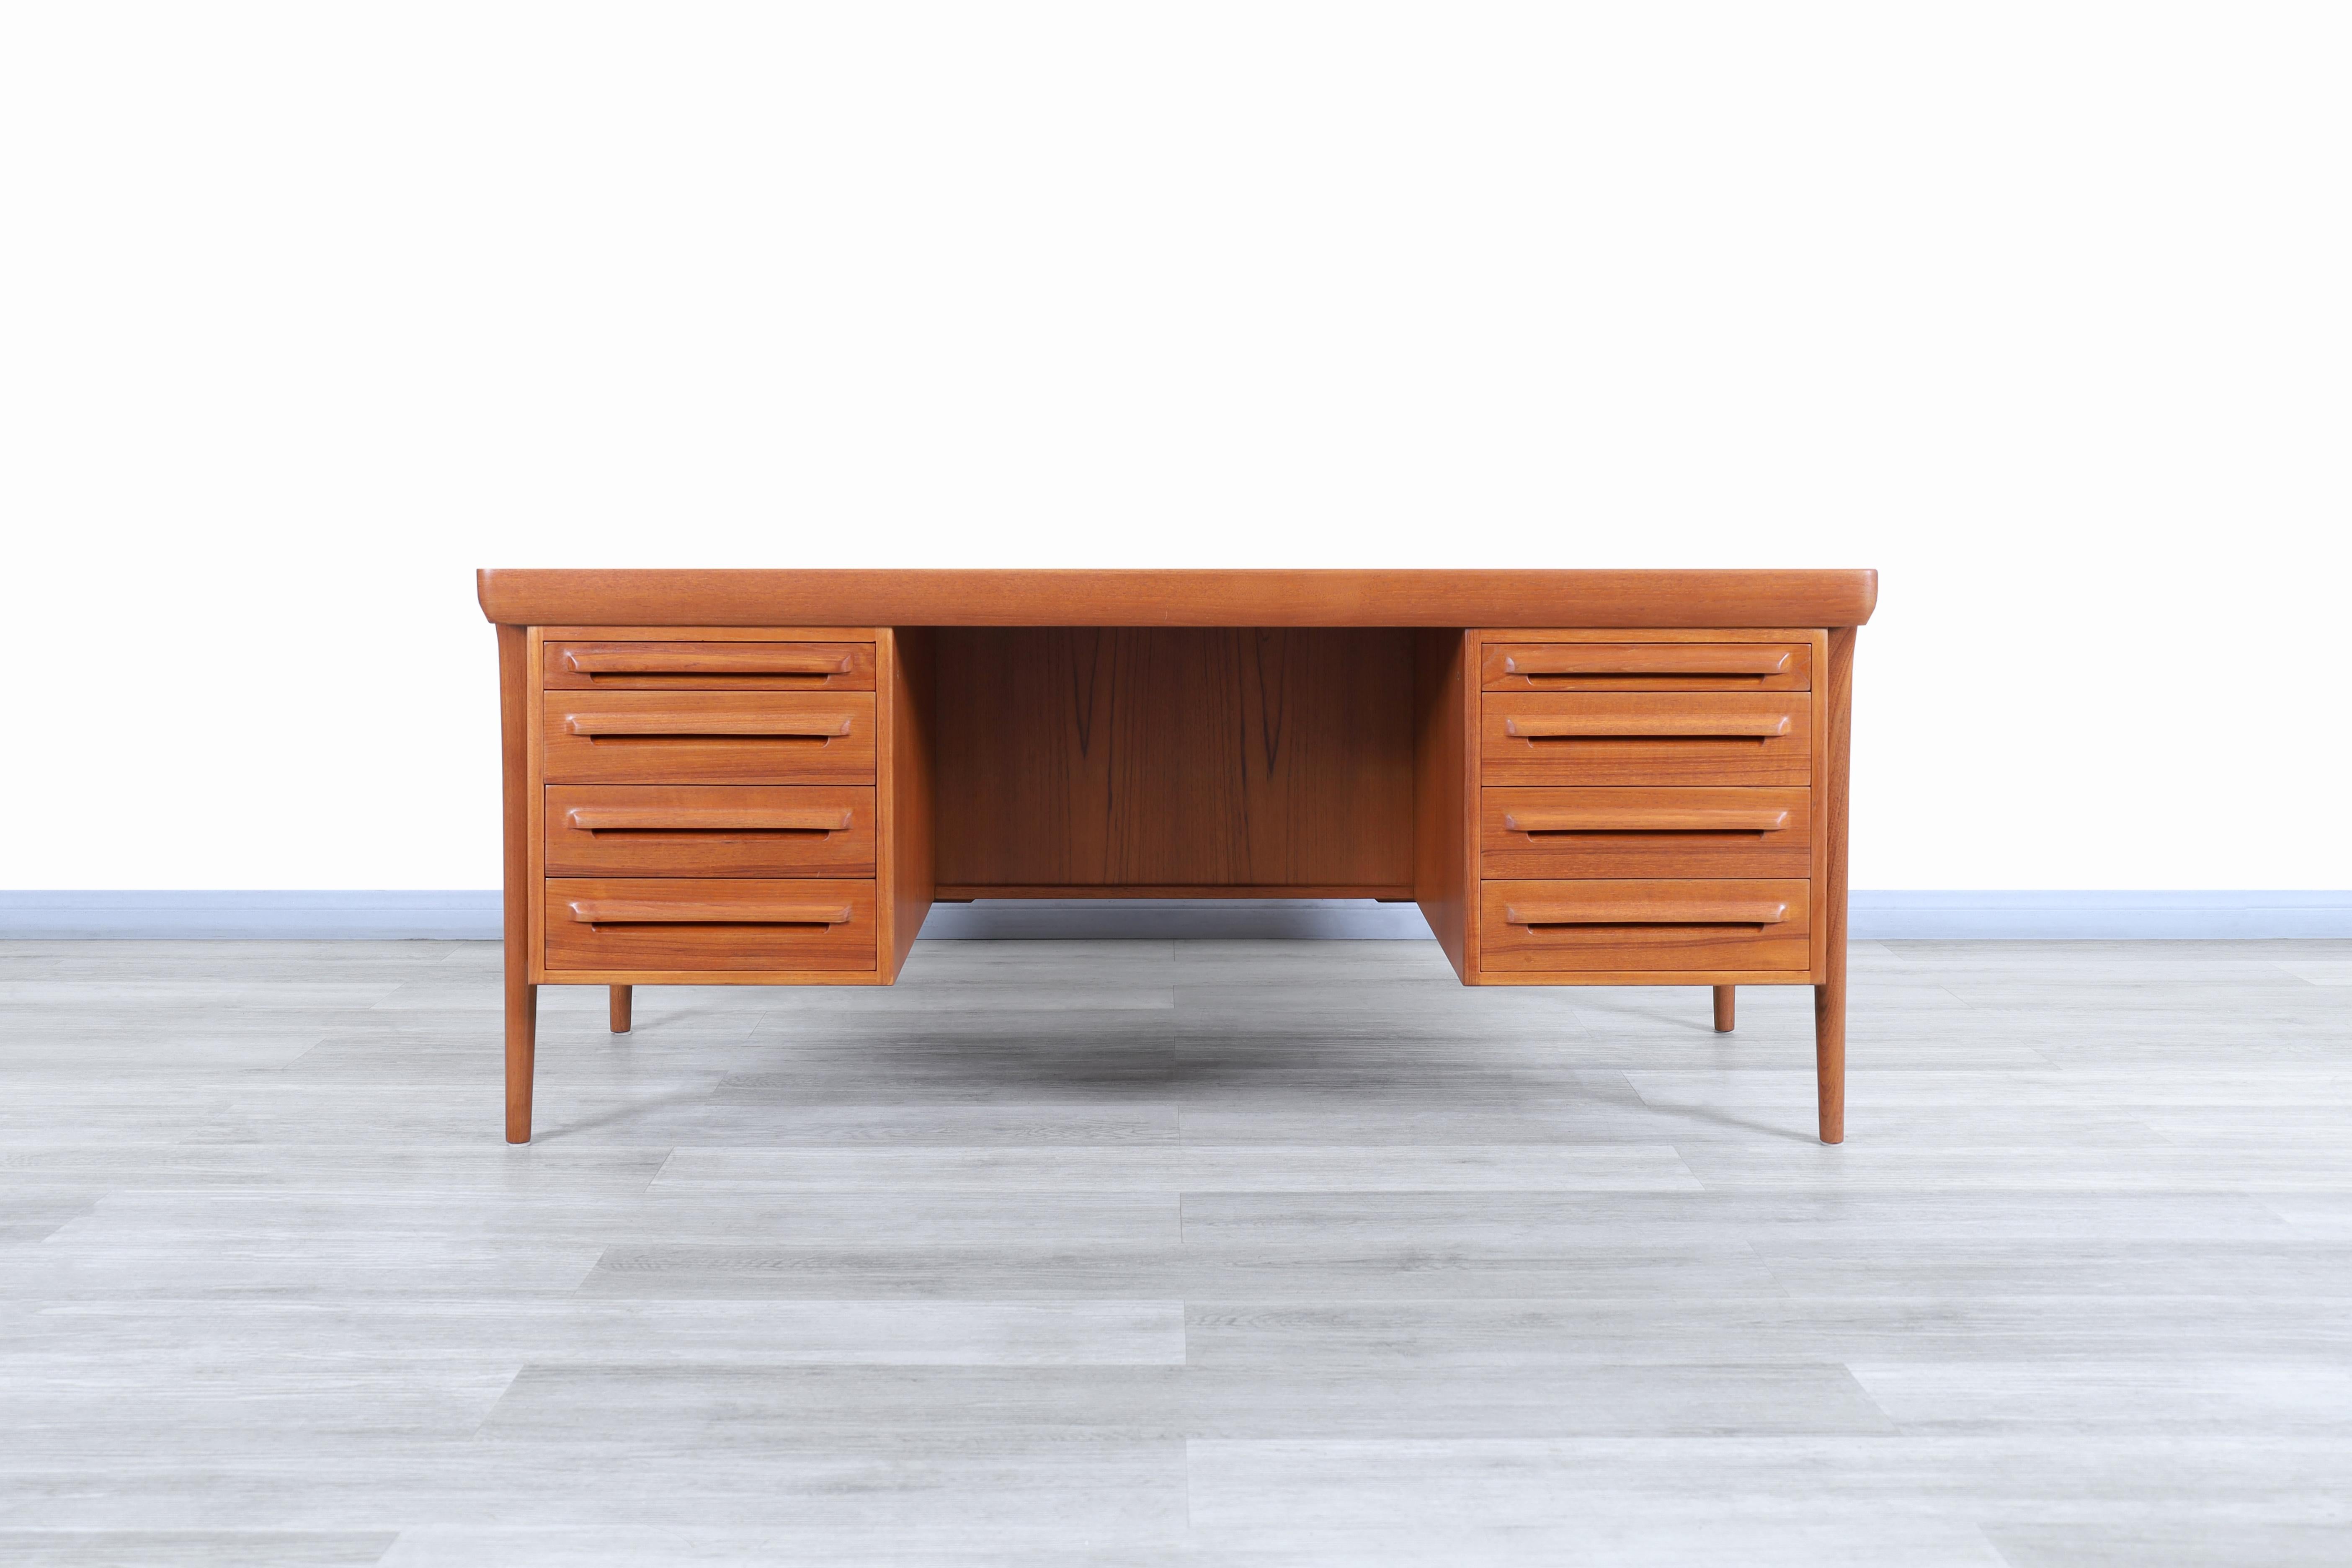 Wunderschöner dänischer Schreibtisch aus Teakholz, entworfen von Ib Kofod Larsen für die Faarup Møbelfabrik in Dänemark, ca. 1960er Jahre. Dieser Schreibtisch hat ein vielseitiges und funktionelles Design. Die Liebe zum Detail zeigt sich in der